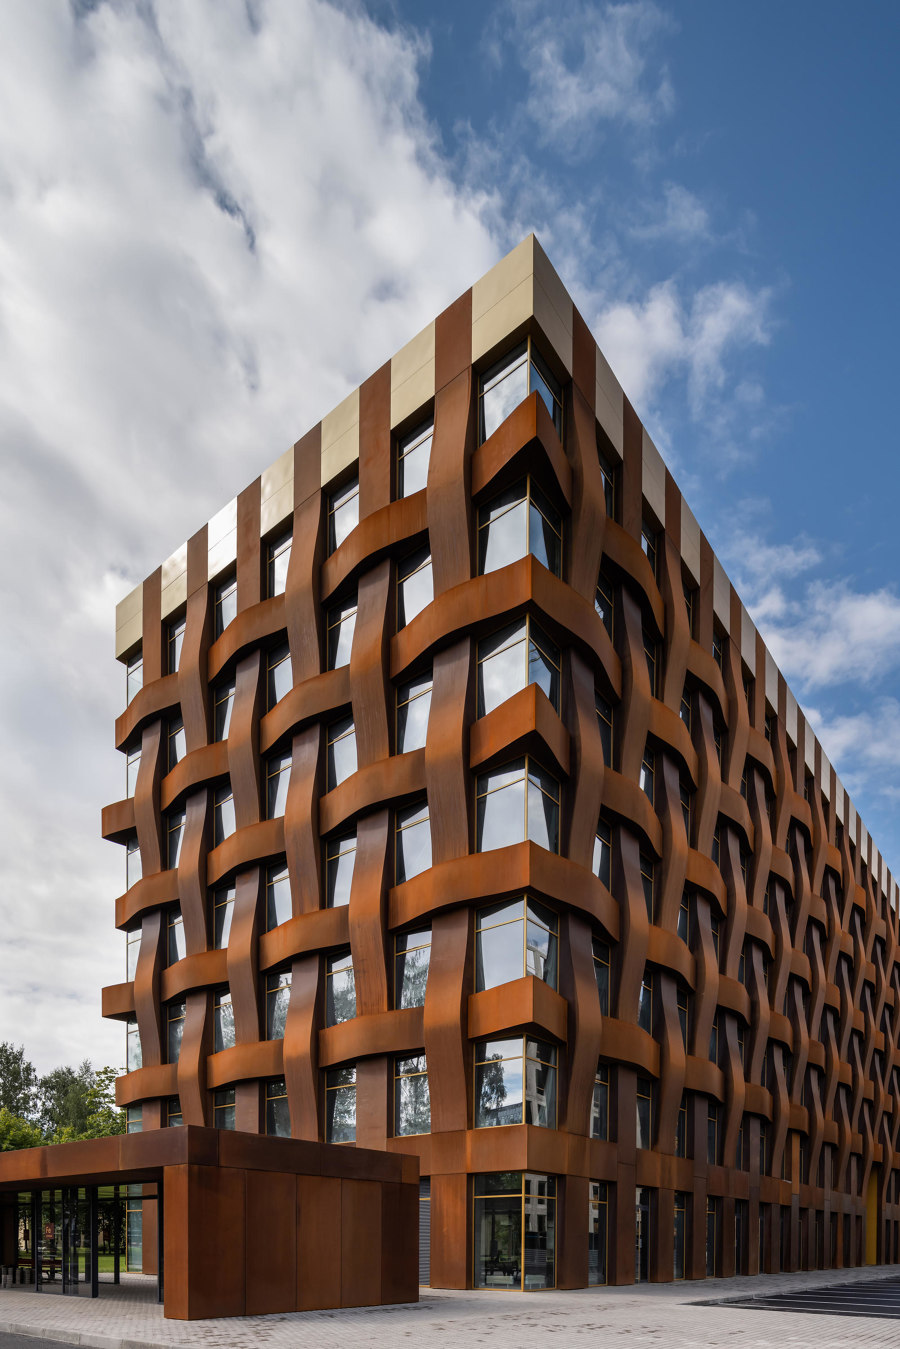 Industrial designs on contemporary facades | Novedades